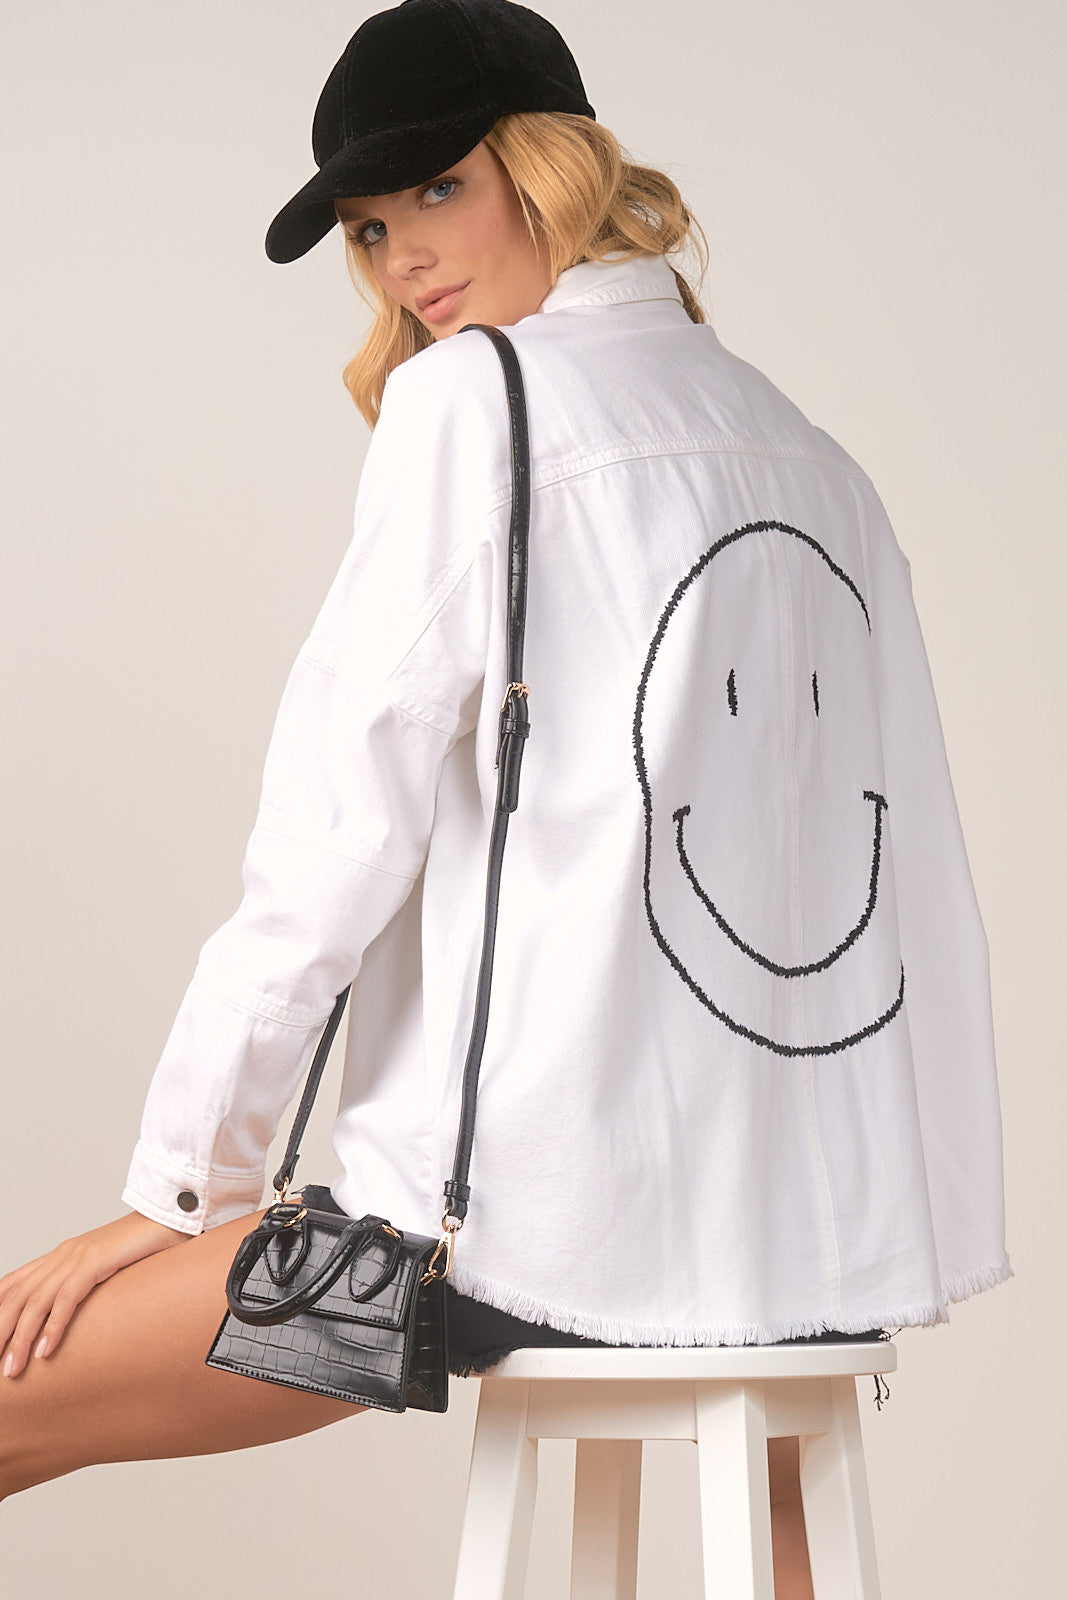 Elan Smiley Jacket